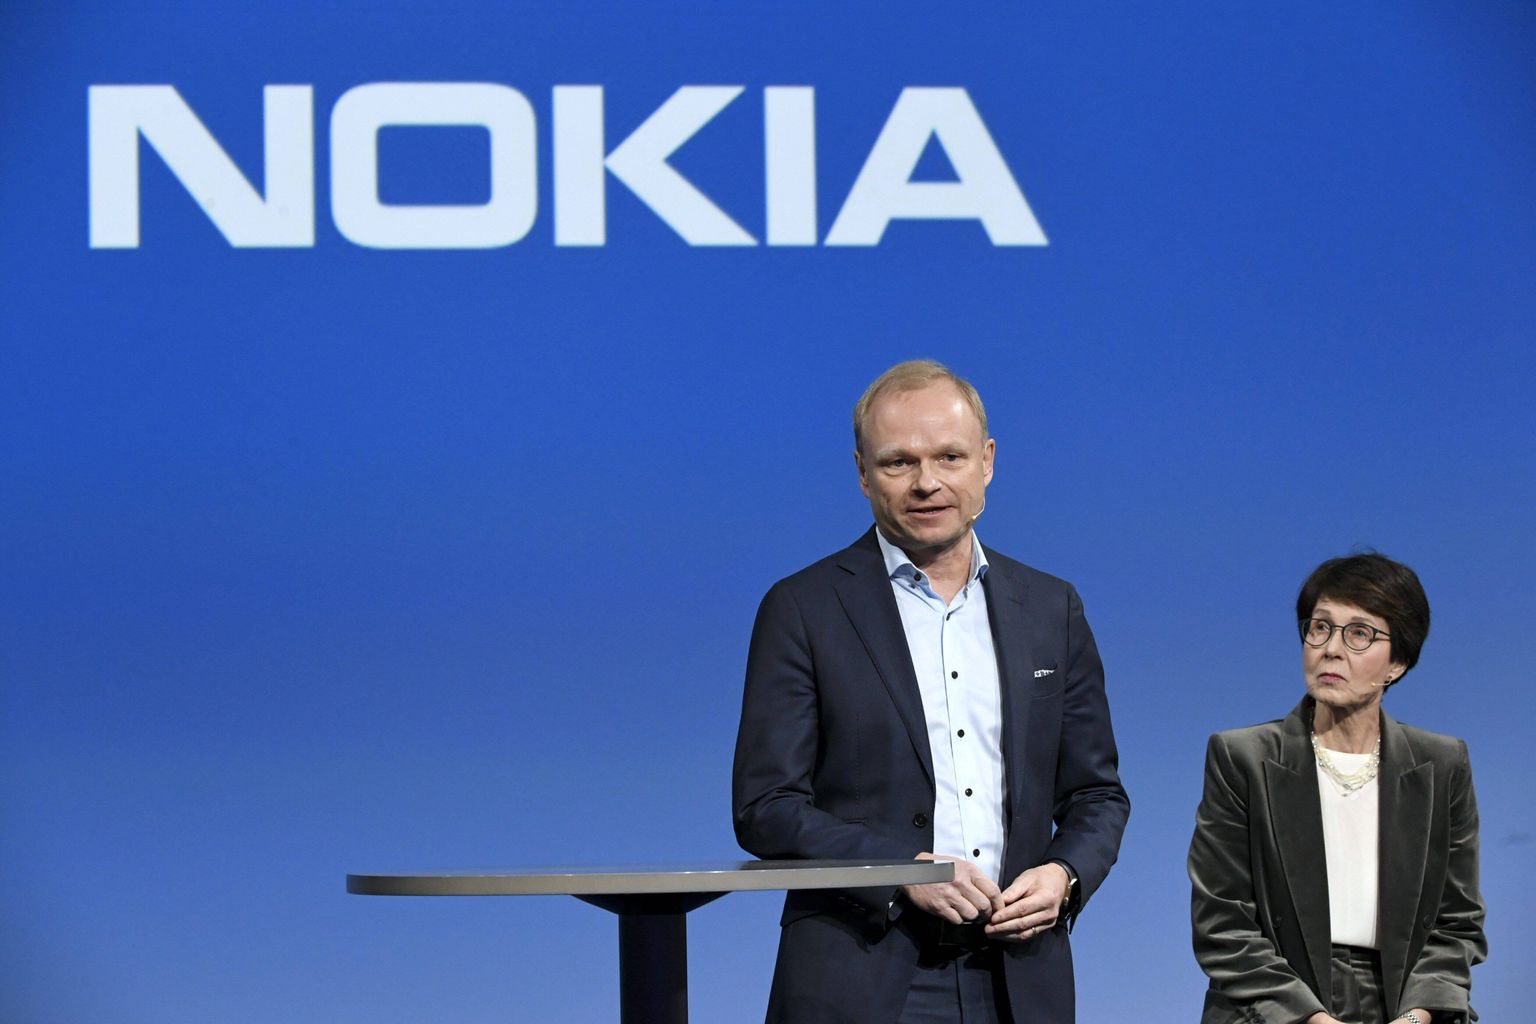 Nokia juht Pekka Lundmark jäi tulemustega rahule